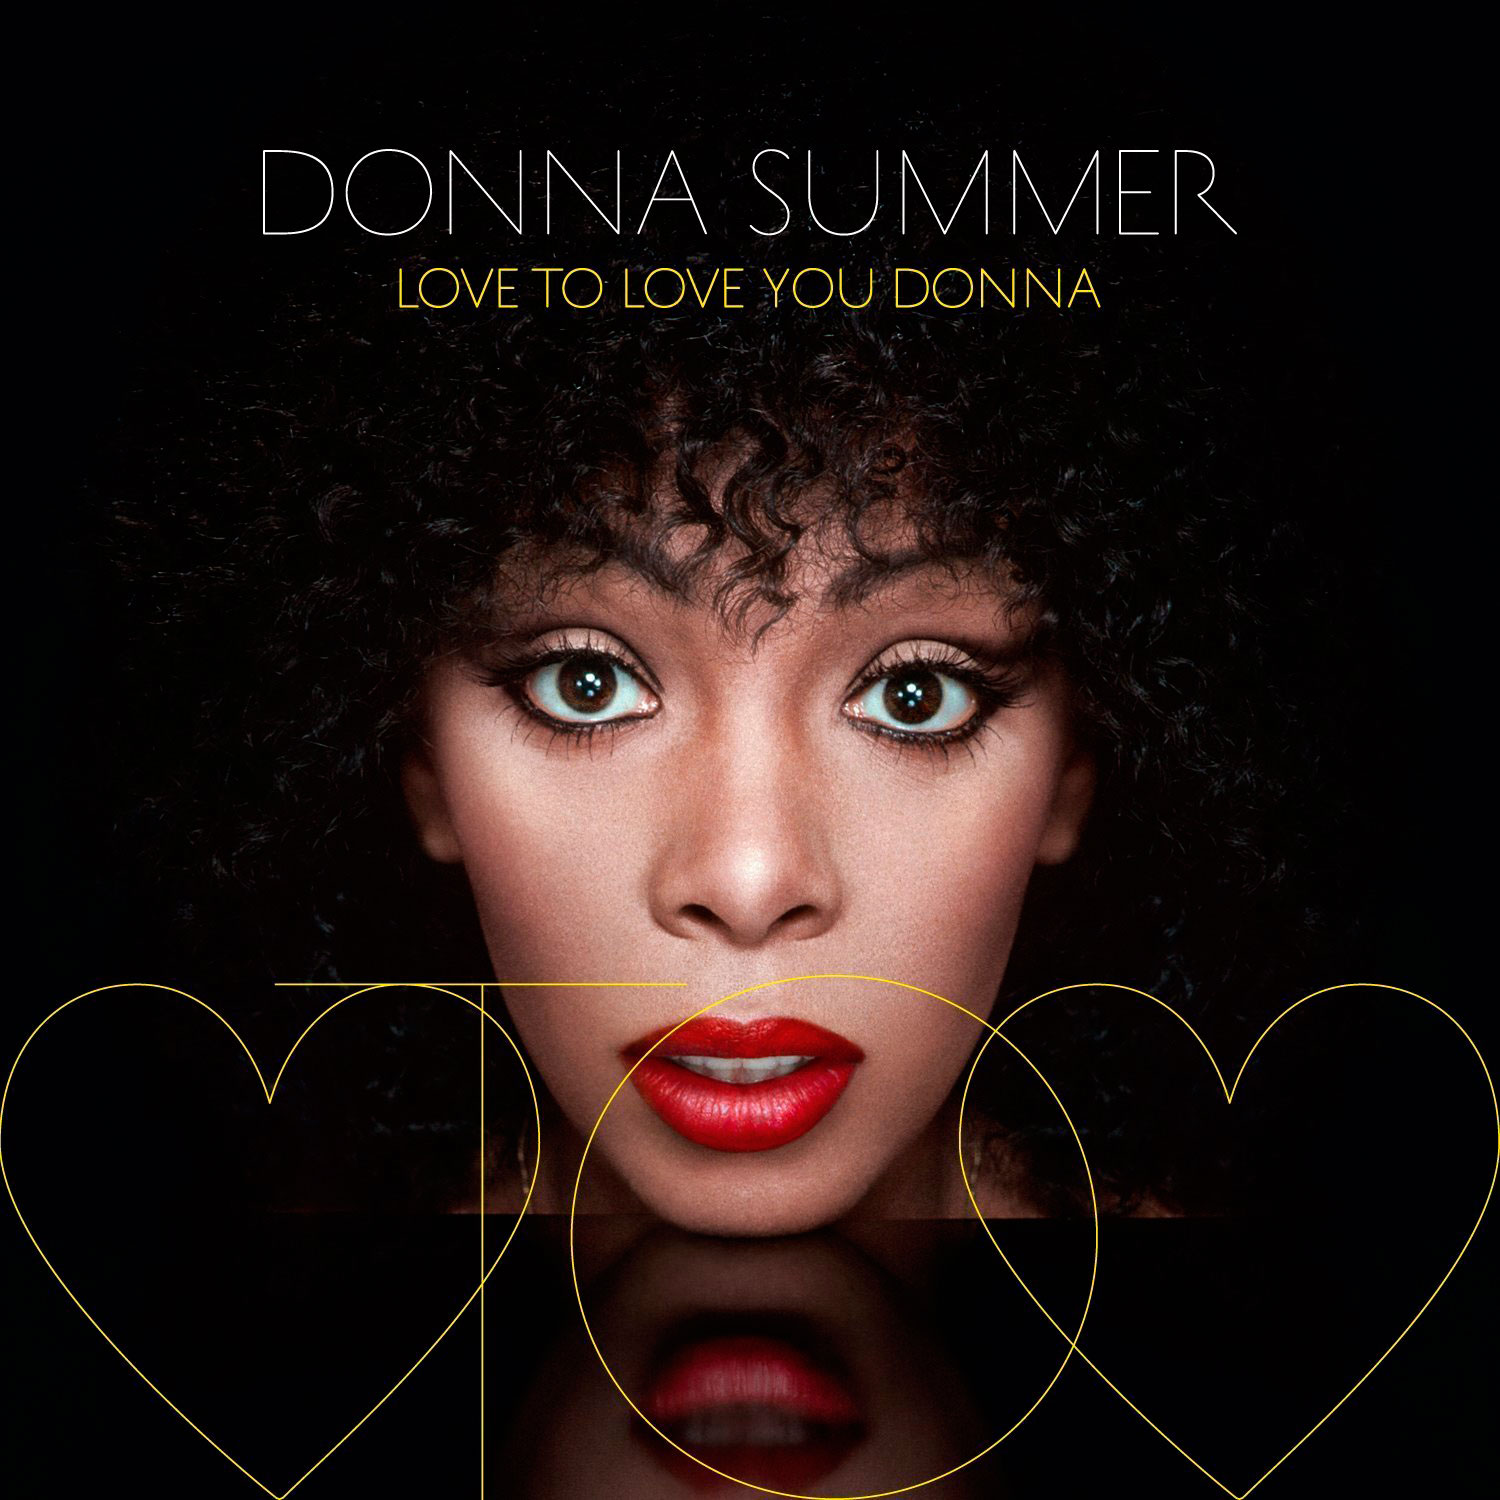 Compartir 11+ imagen portadas de discos de donna summer